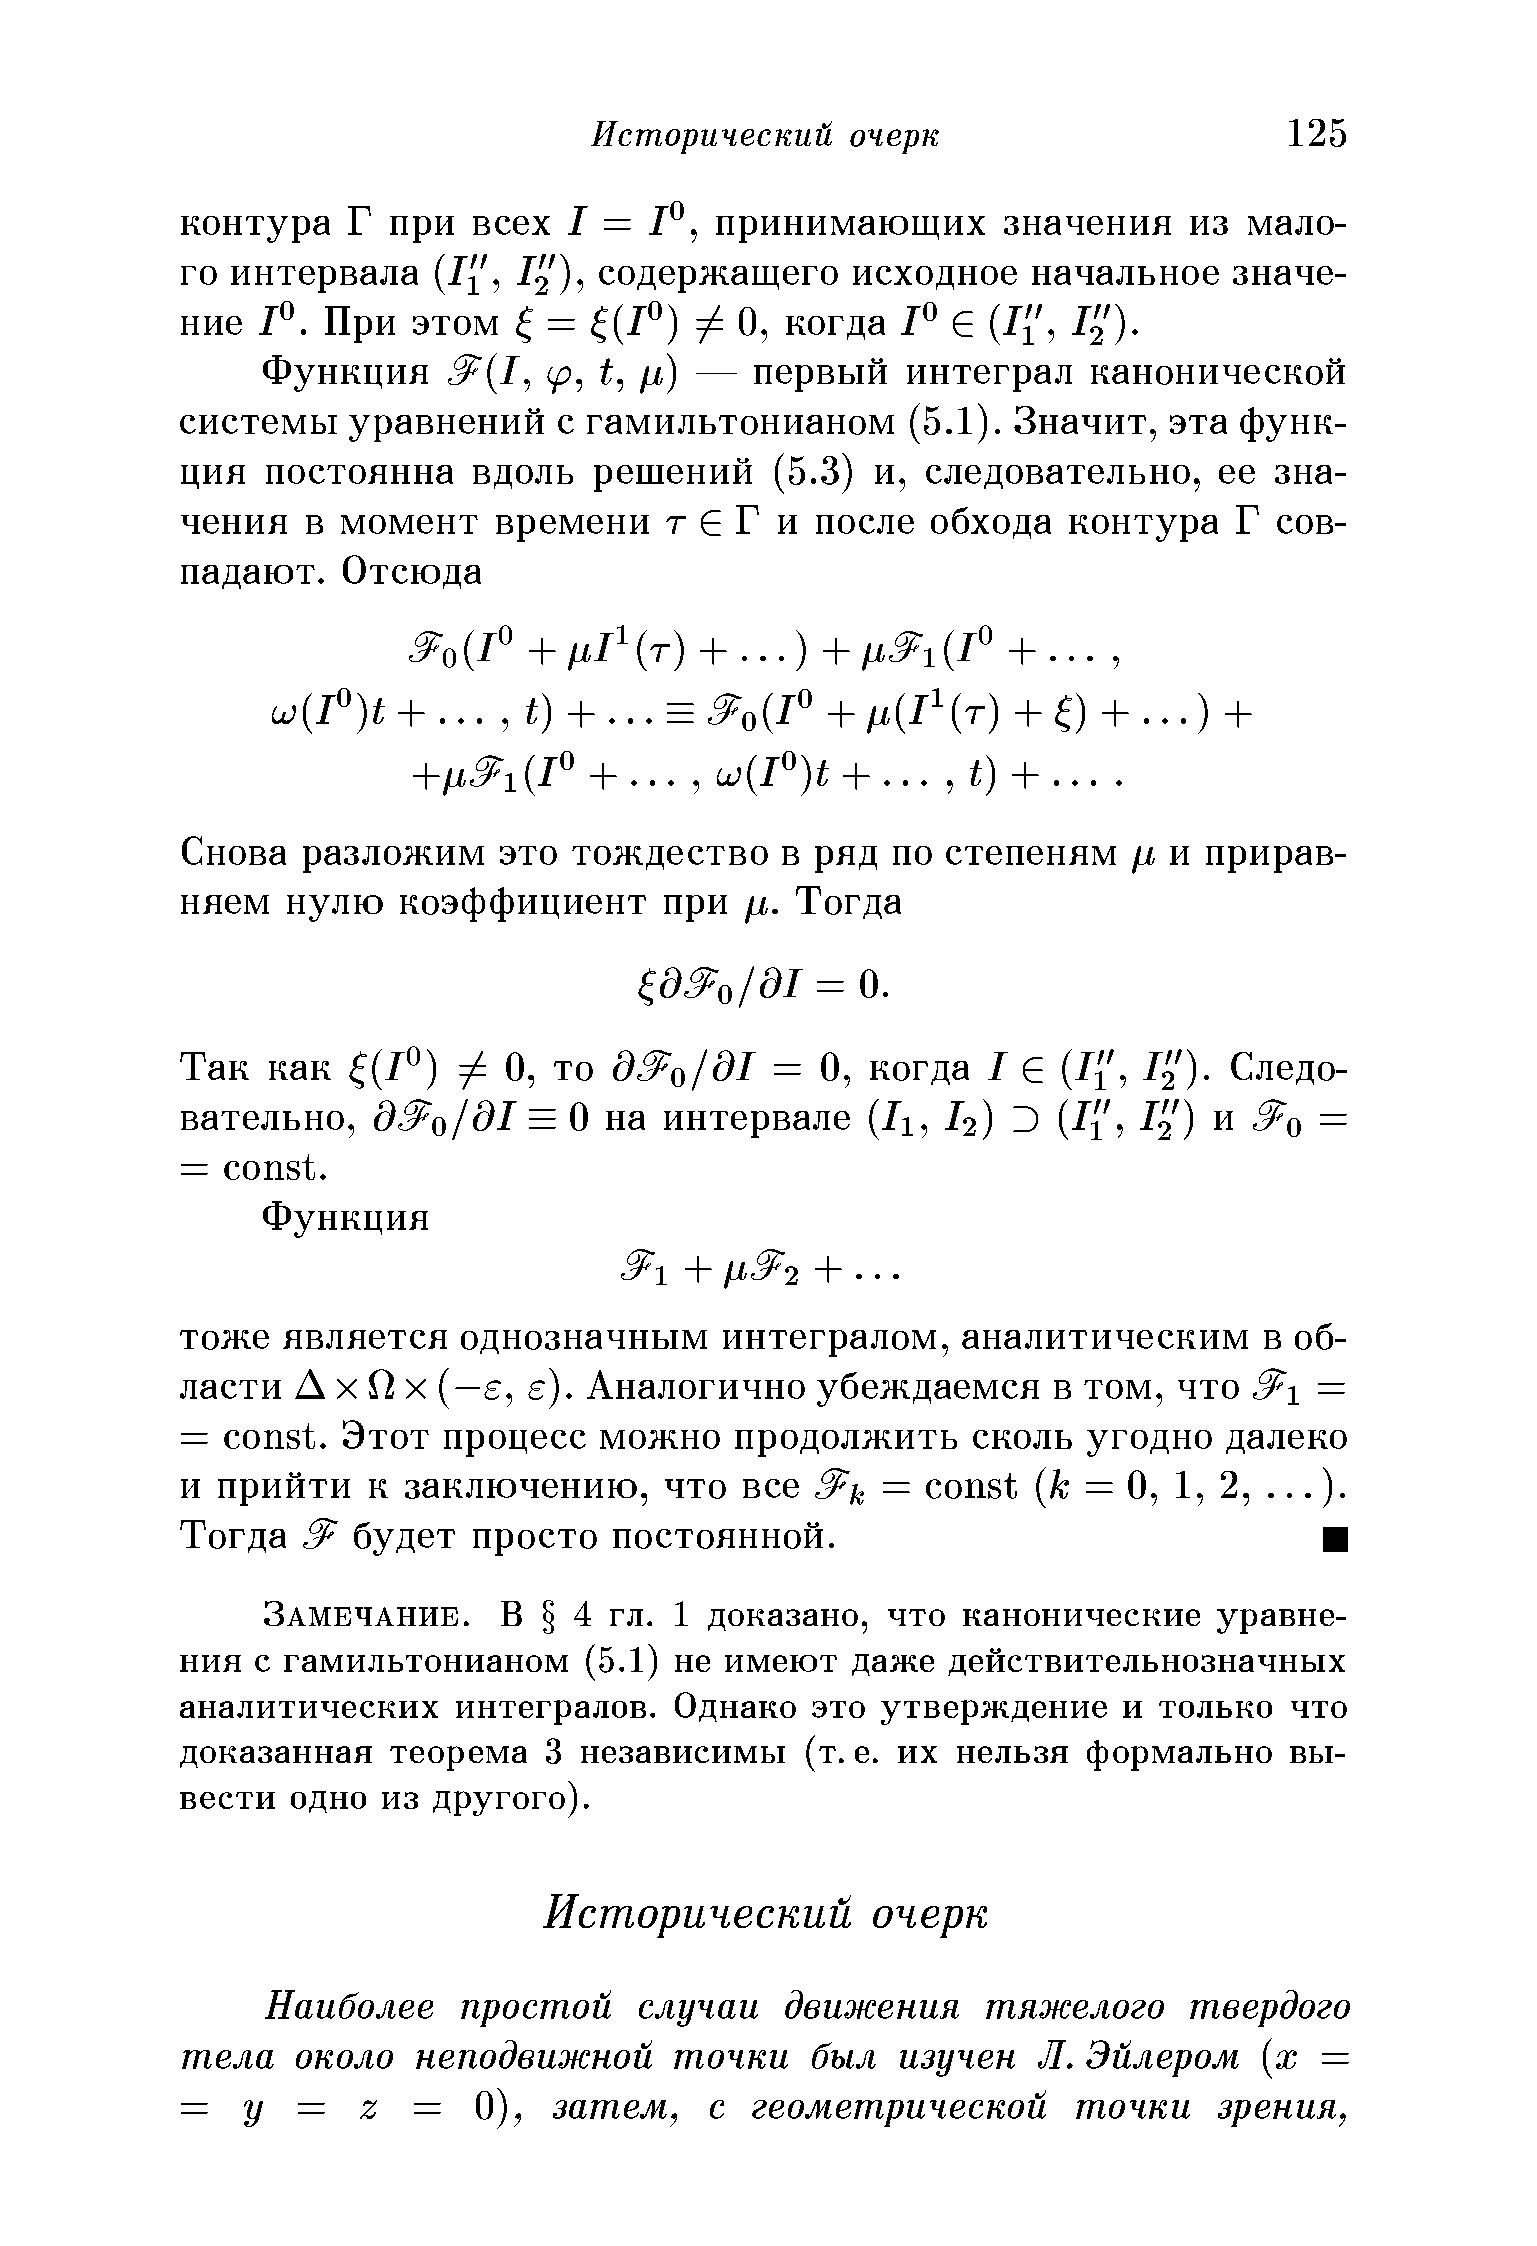 Замечание. В 4 гл. 1 доказано, что канонические уравнения с гамильтонианом (5.1) не имеют даже действительнозначных аналитических интегралов. Однако это утверждение и только что доказанная теорема 3 независимы (т. е. их нельзя формально вывести одно из другого).
